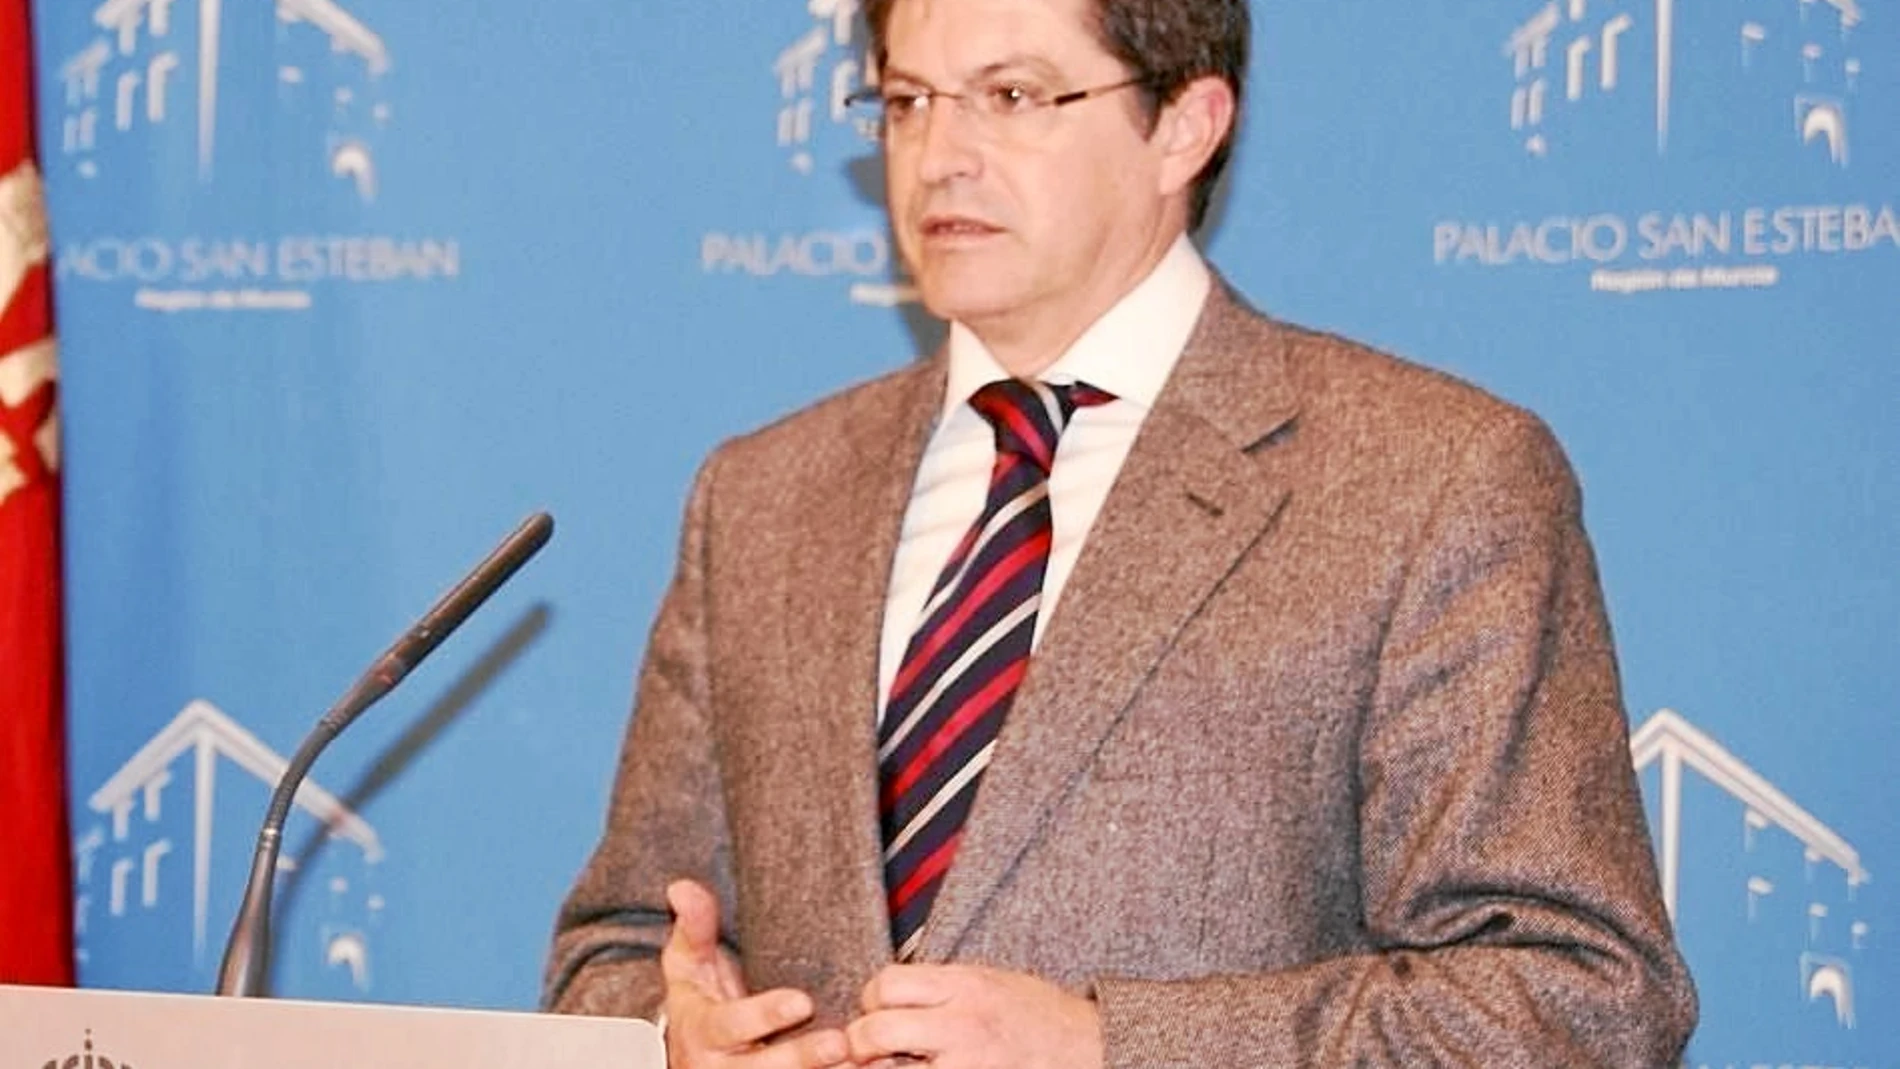 El alcalde y presidente del Partido Popular en Lorca, Francisco Jódar, en una imagen reciente